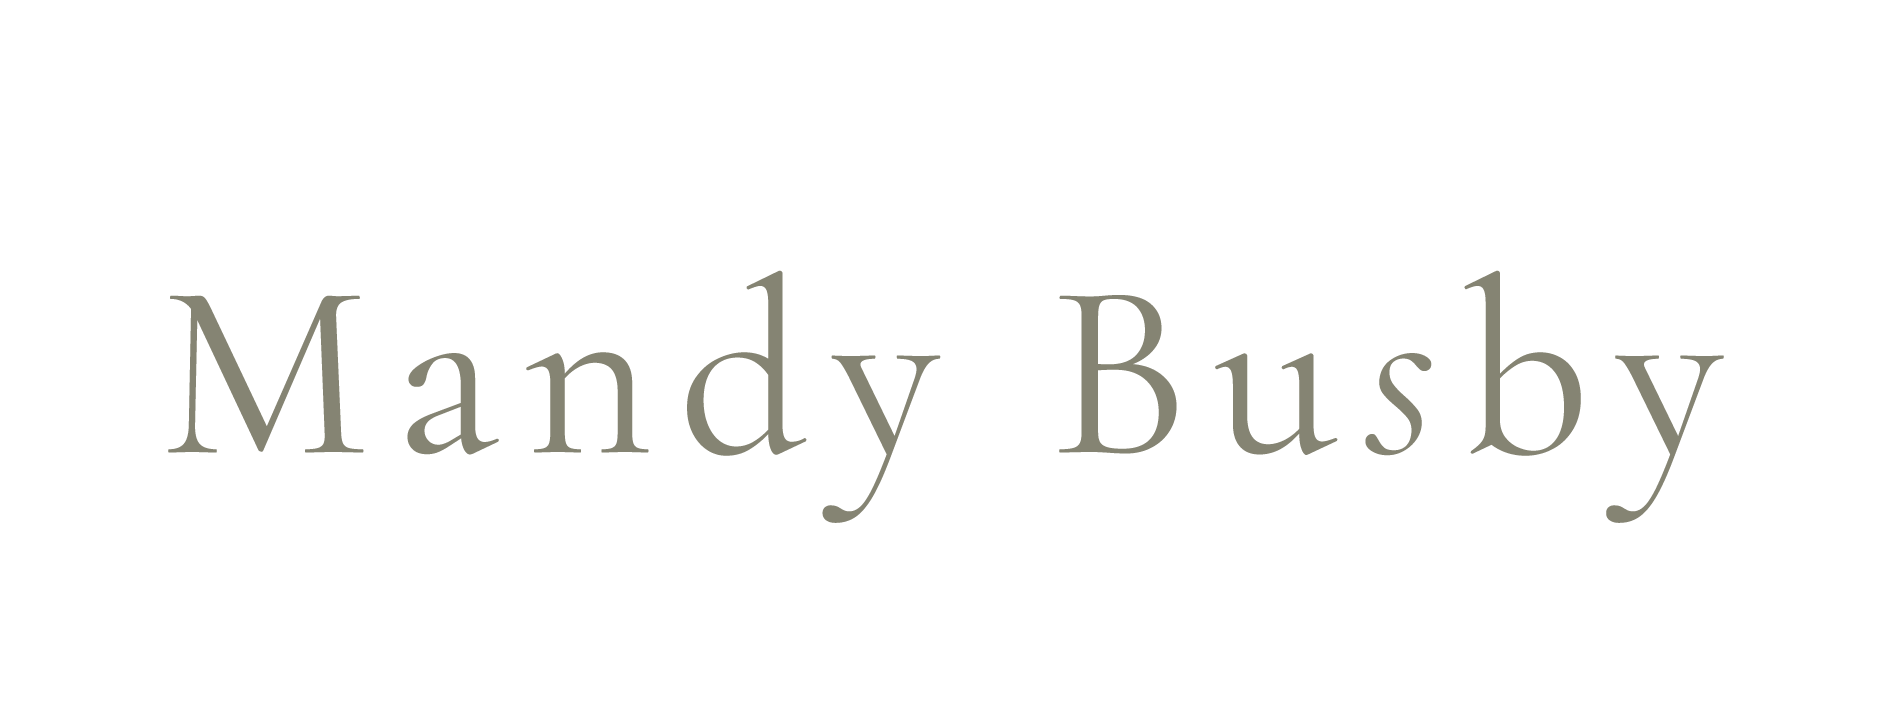 Mandy Busby